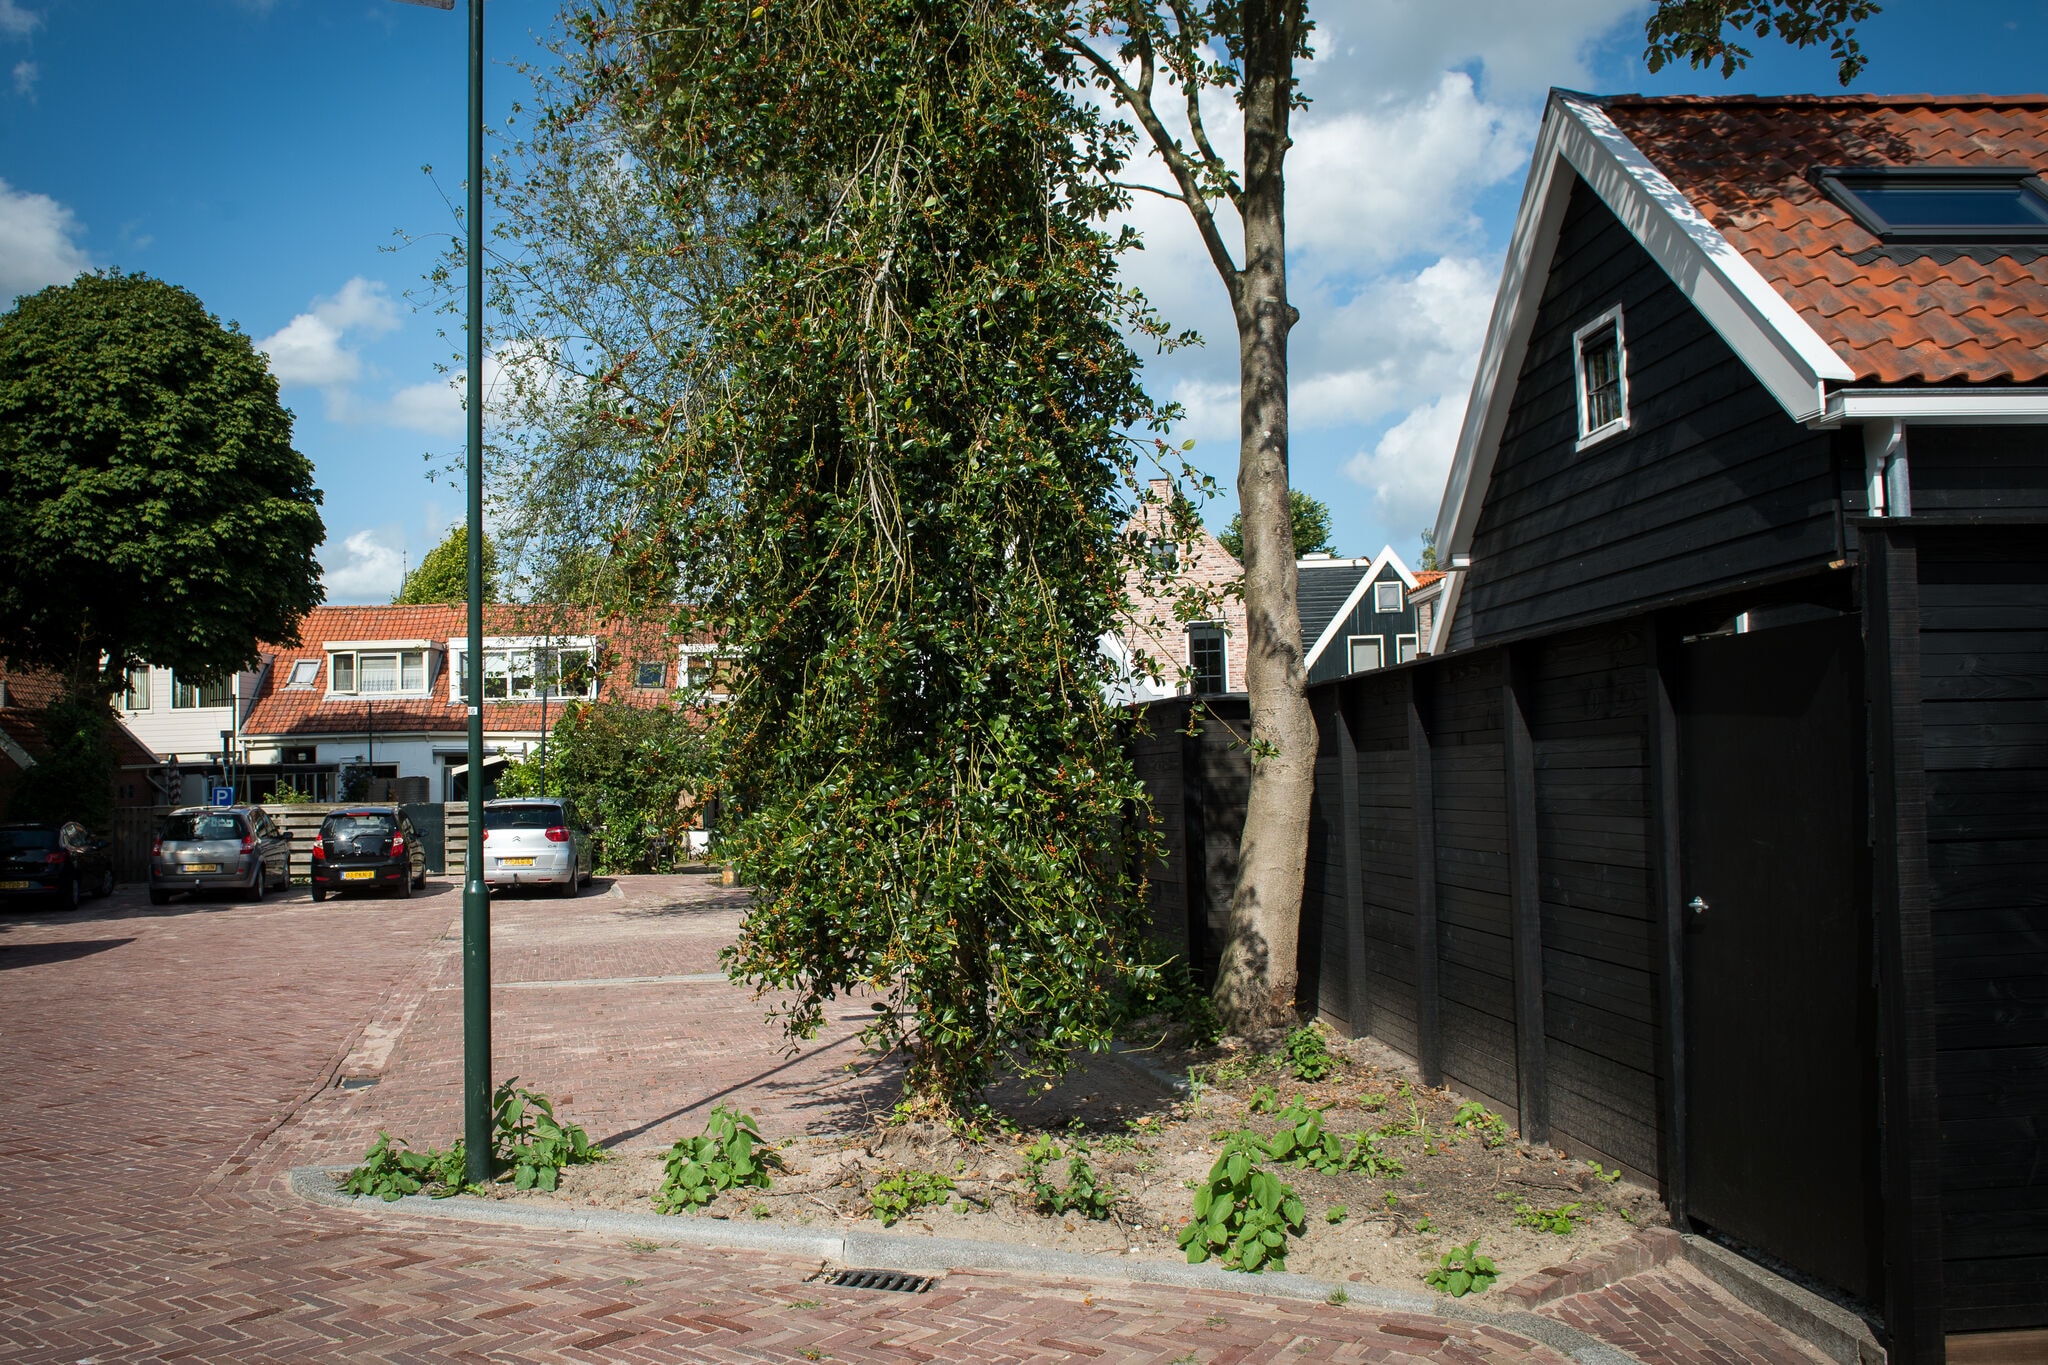 Chalet Kerkzicht im Herzen von Monnickendam mit Terrasse